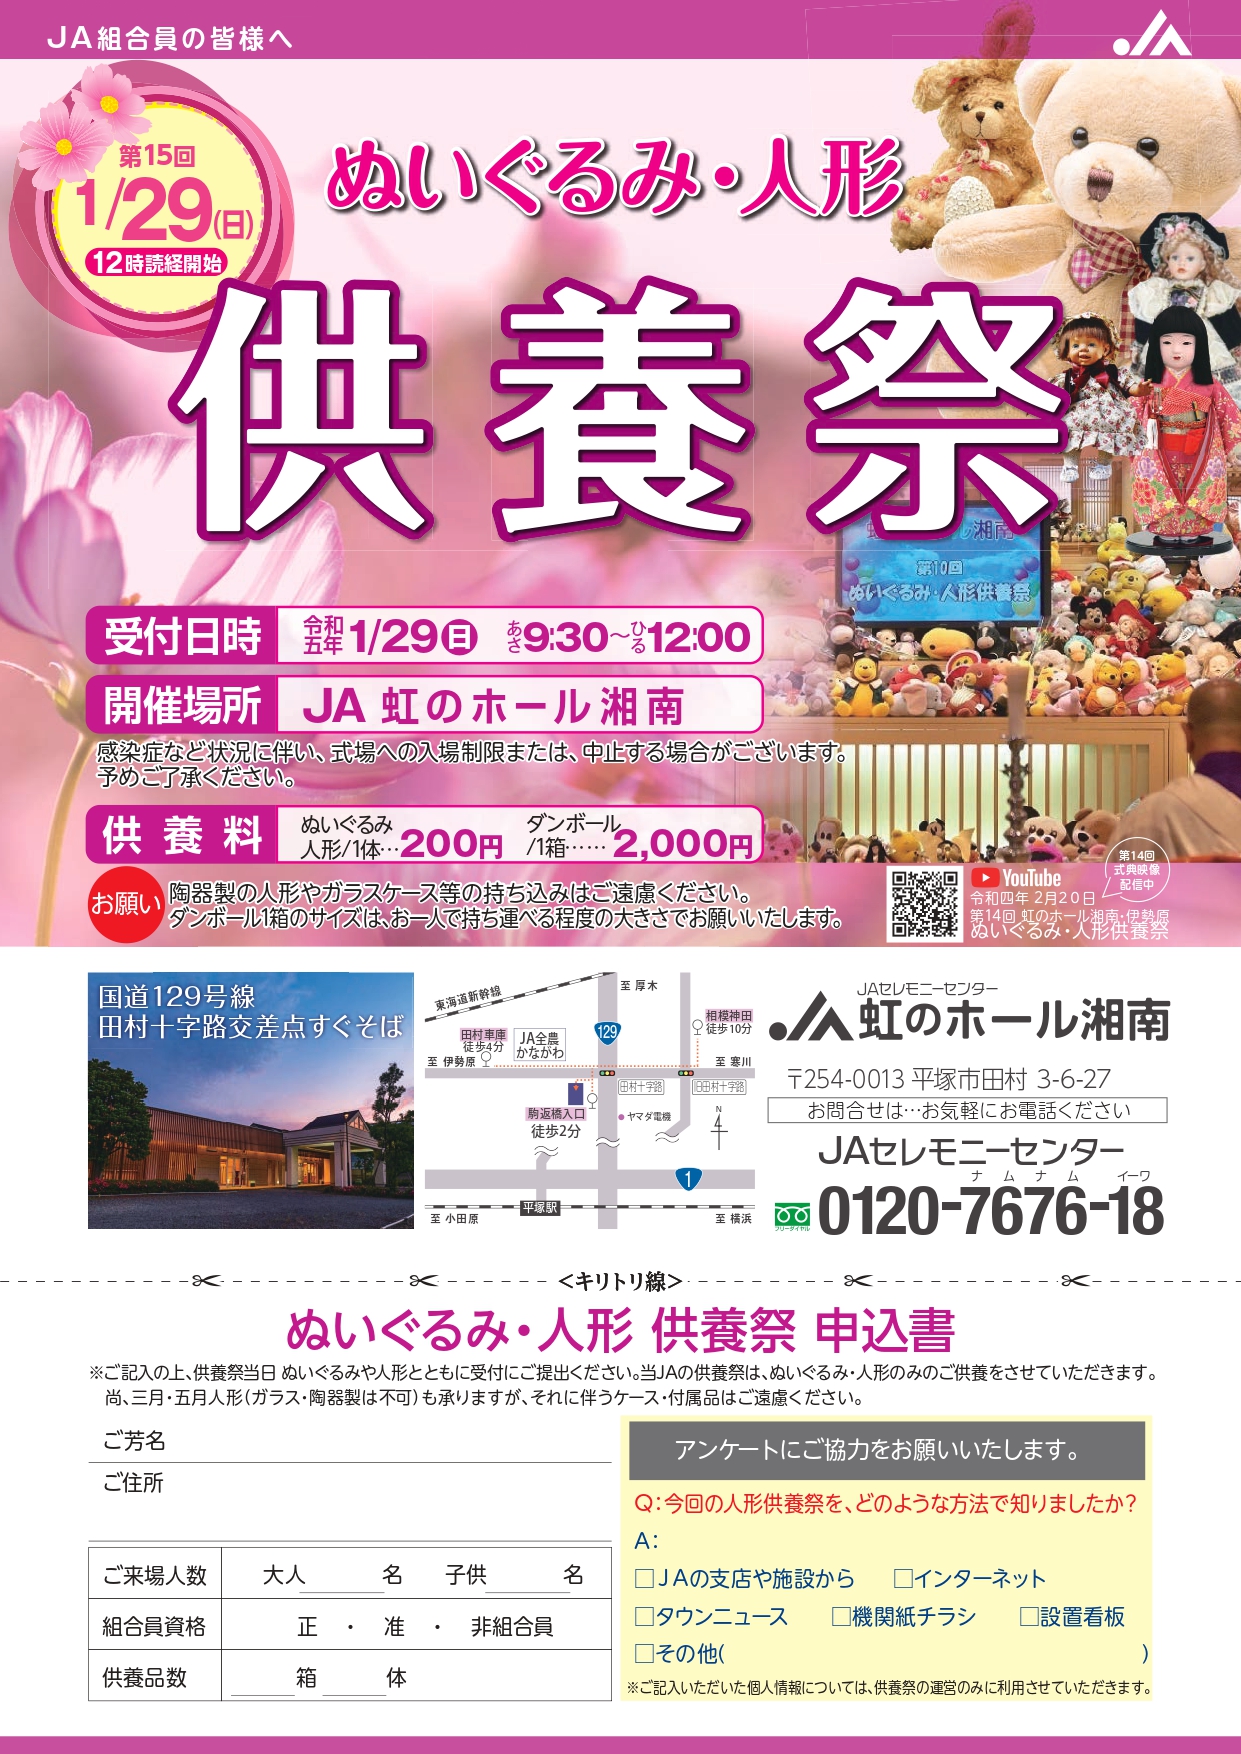 2023年1月29日 虹のホール湘南において「ぬいぐるみ・ 人形供養祭 」を開催いたします。 ご予約は不要ですので、お気軽にお越しください。 ＪＡ葬祭神奈川 ホームページに、各種イベント案内を掲載しておりますので、ぜひご確認ください。 http://jakanagawa-sousaikyougikai.jp/